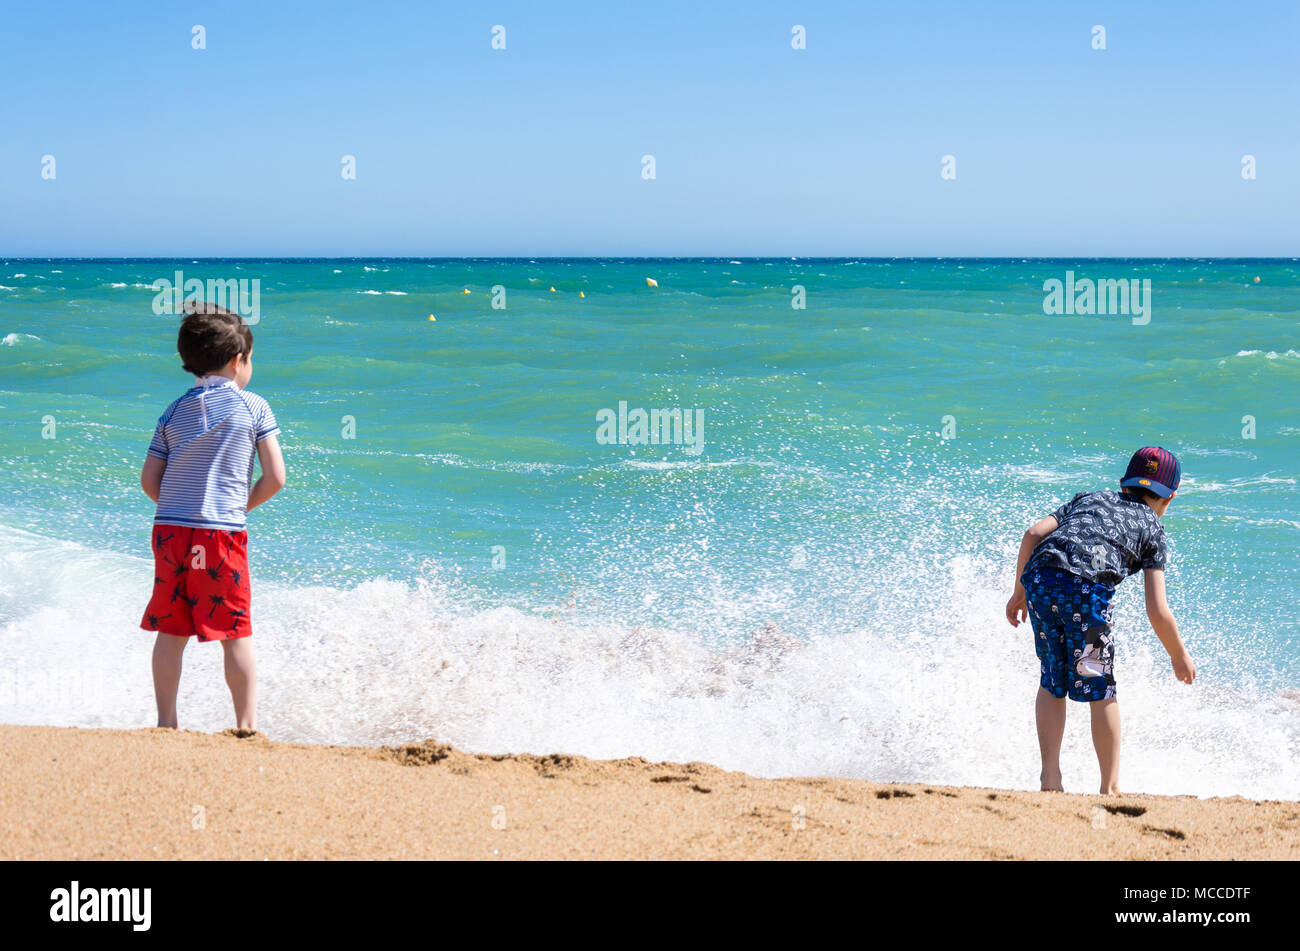 Zwei junge Brüder spielen gemeinsam an einem Sandstrand in der Nähe des Wasser. Stockfoto